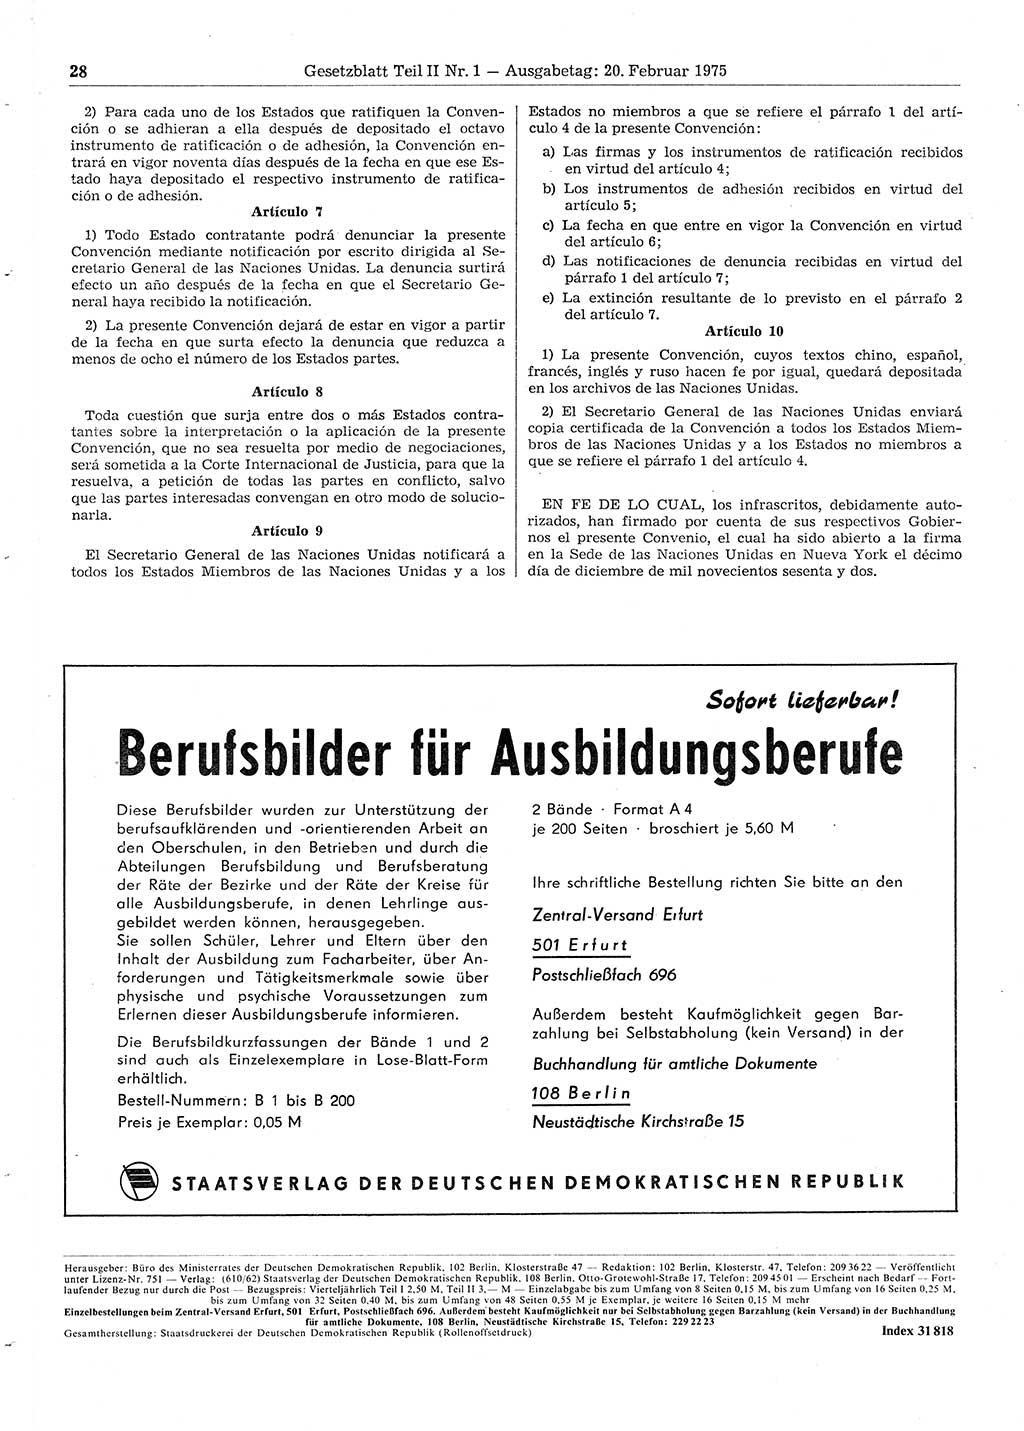 Gesetzblatt (GBl.) der Deutschen Demokratischen Republik (DDR) Teil ⅠⅠ 1975, Seite 28 (GBl. DDR ⅠⅠ 1975, S. 28)